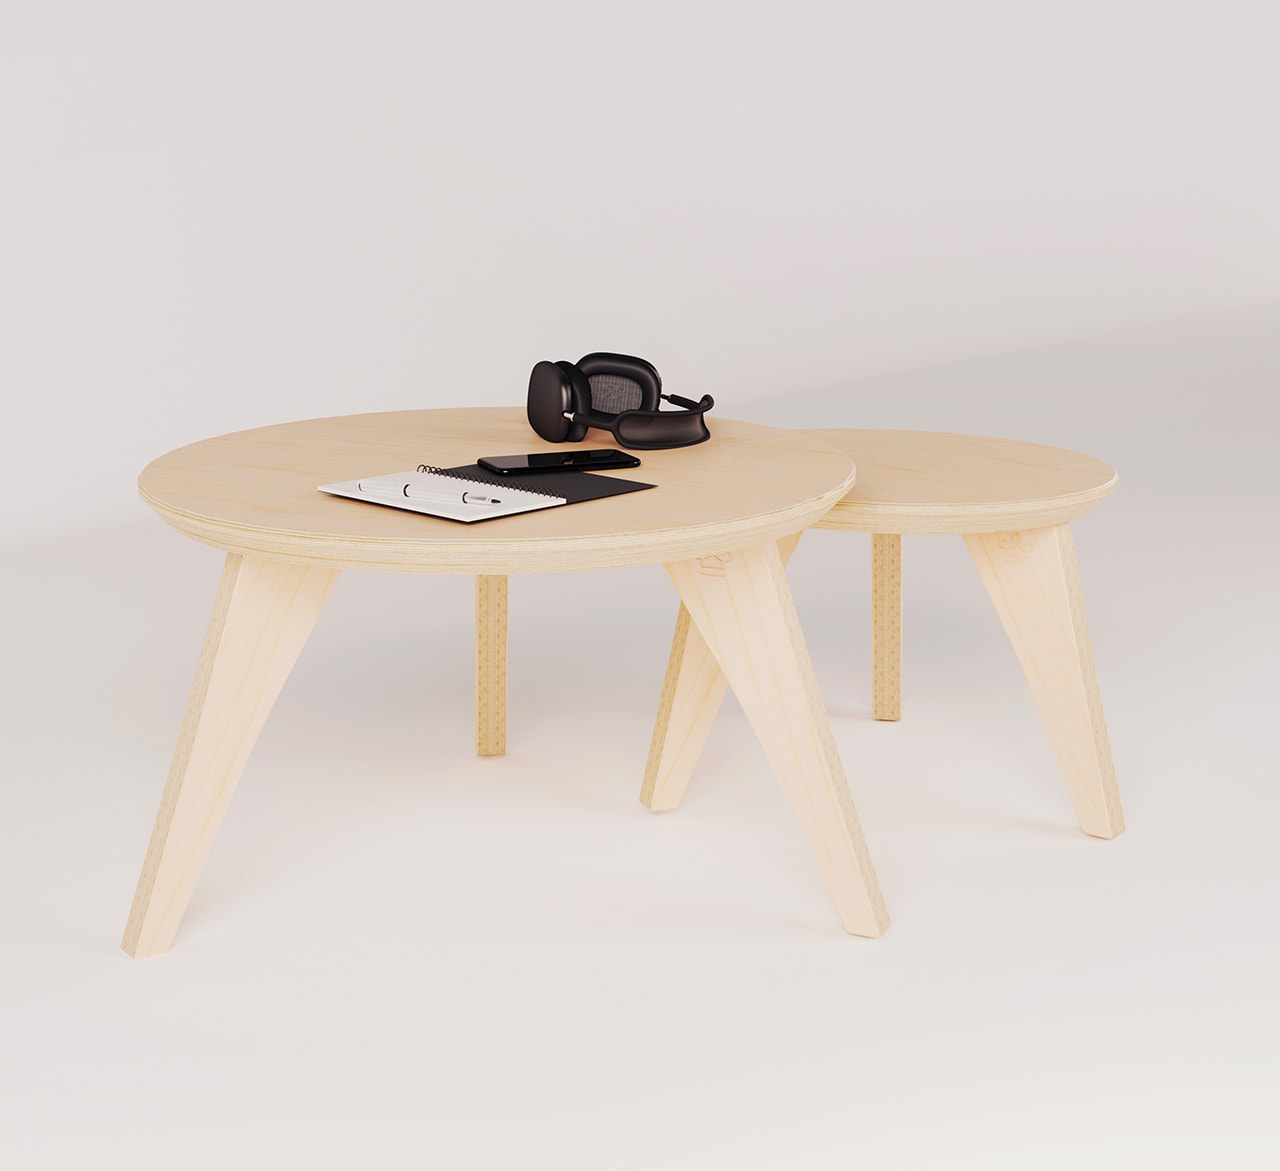 une table basse gigogne en bois avec un carnet et un casque audio